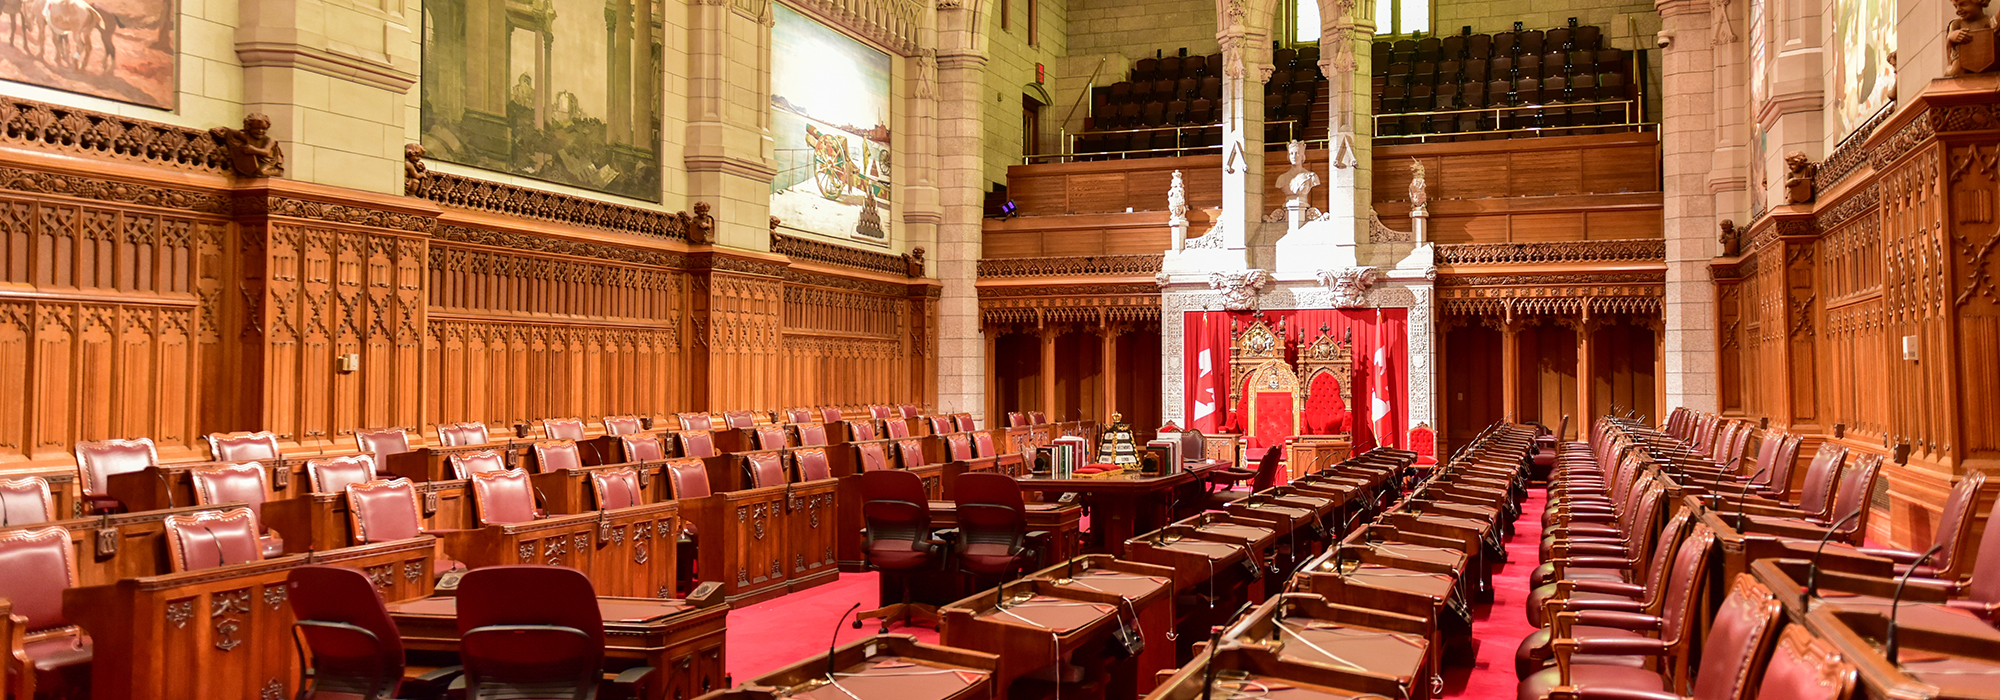 Le renouvellement du Sénat du Canada : poursuivre dans quelle voie ?